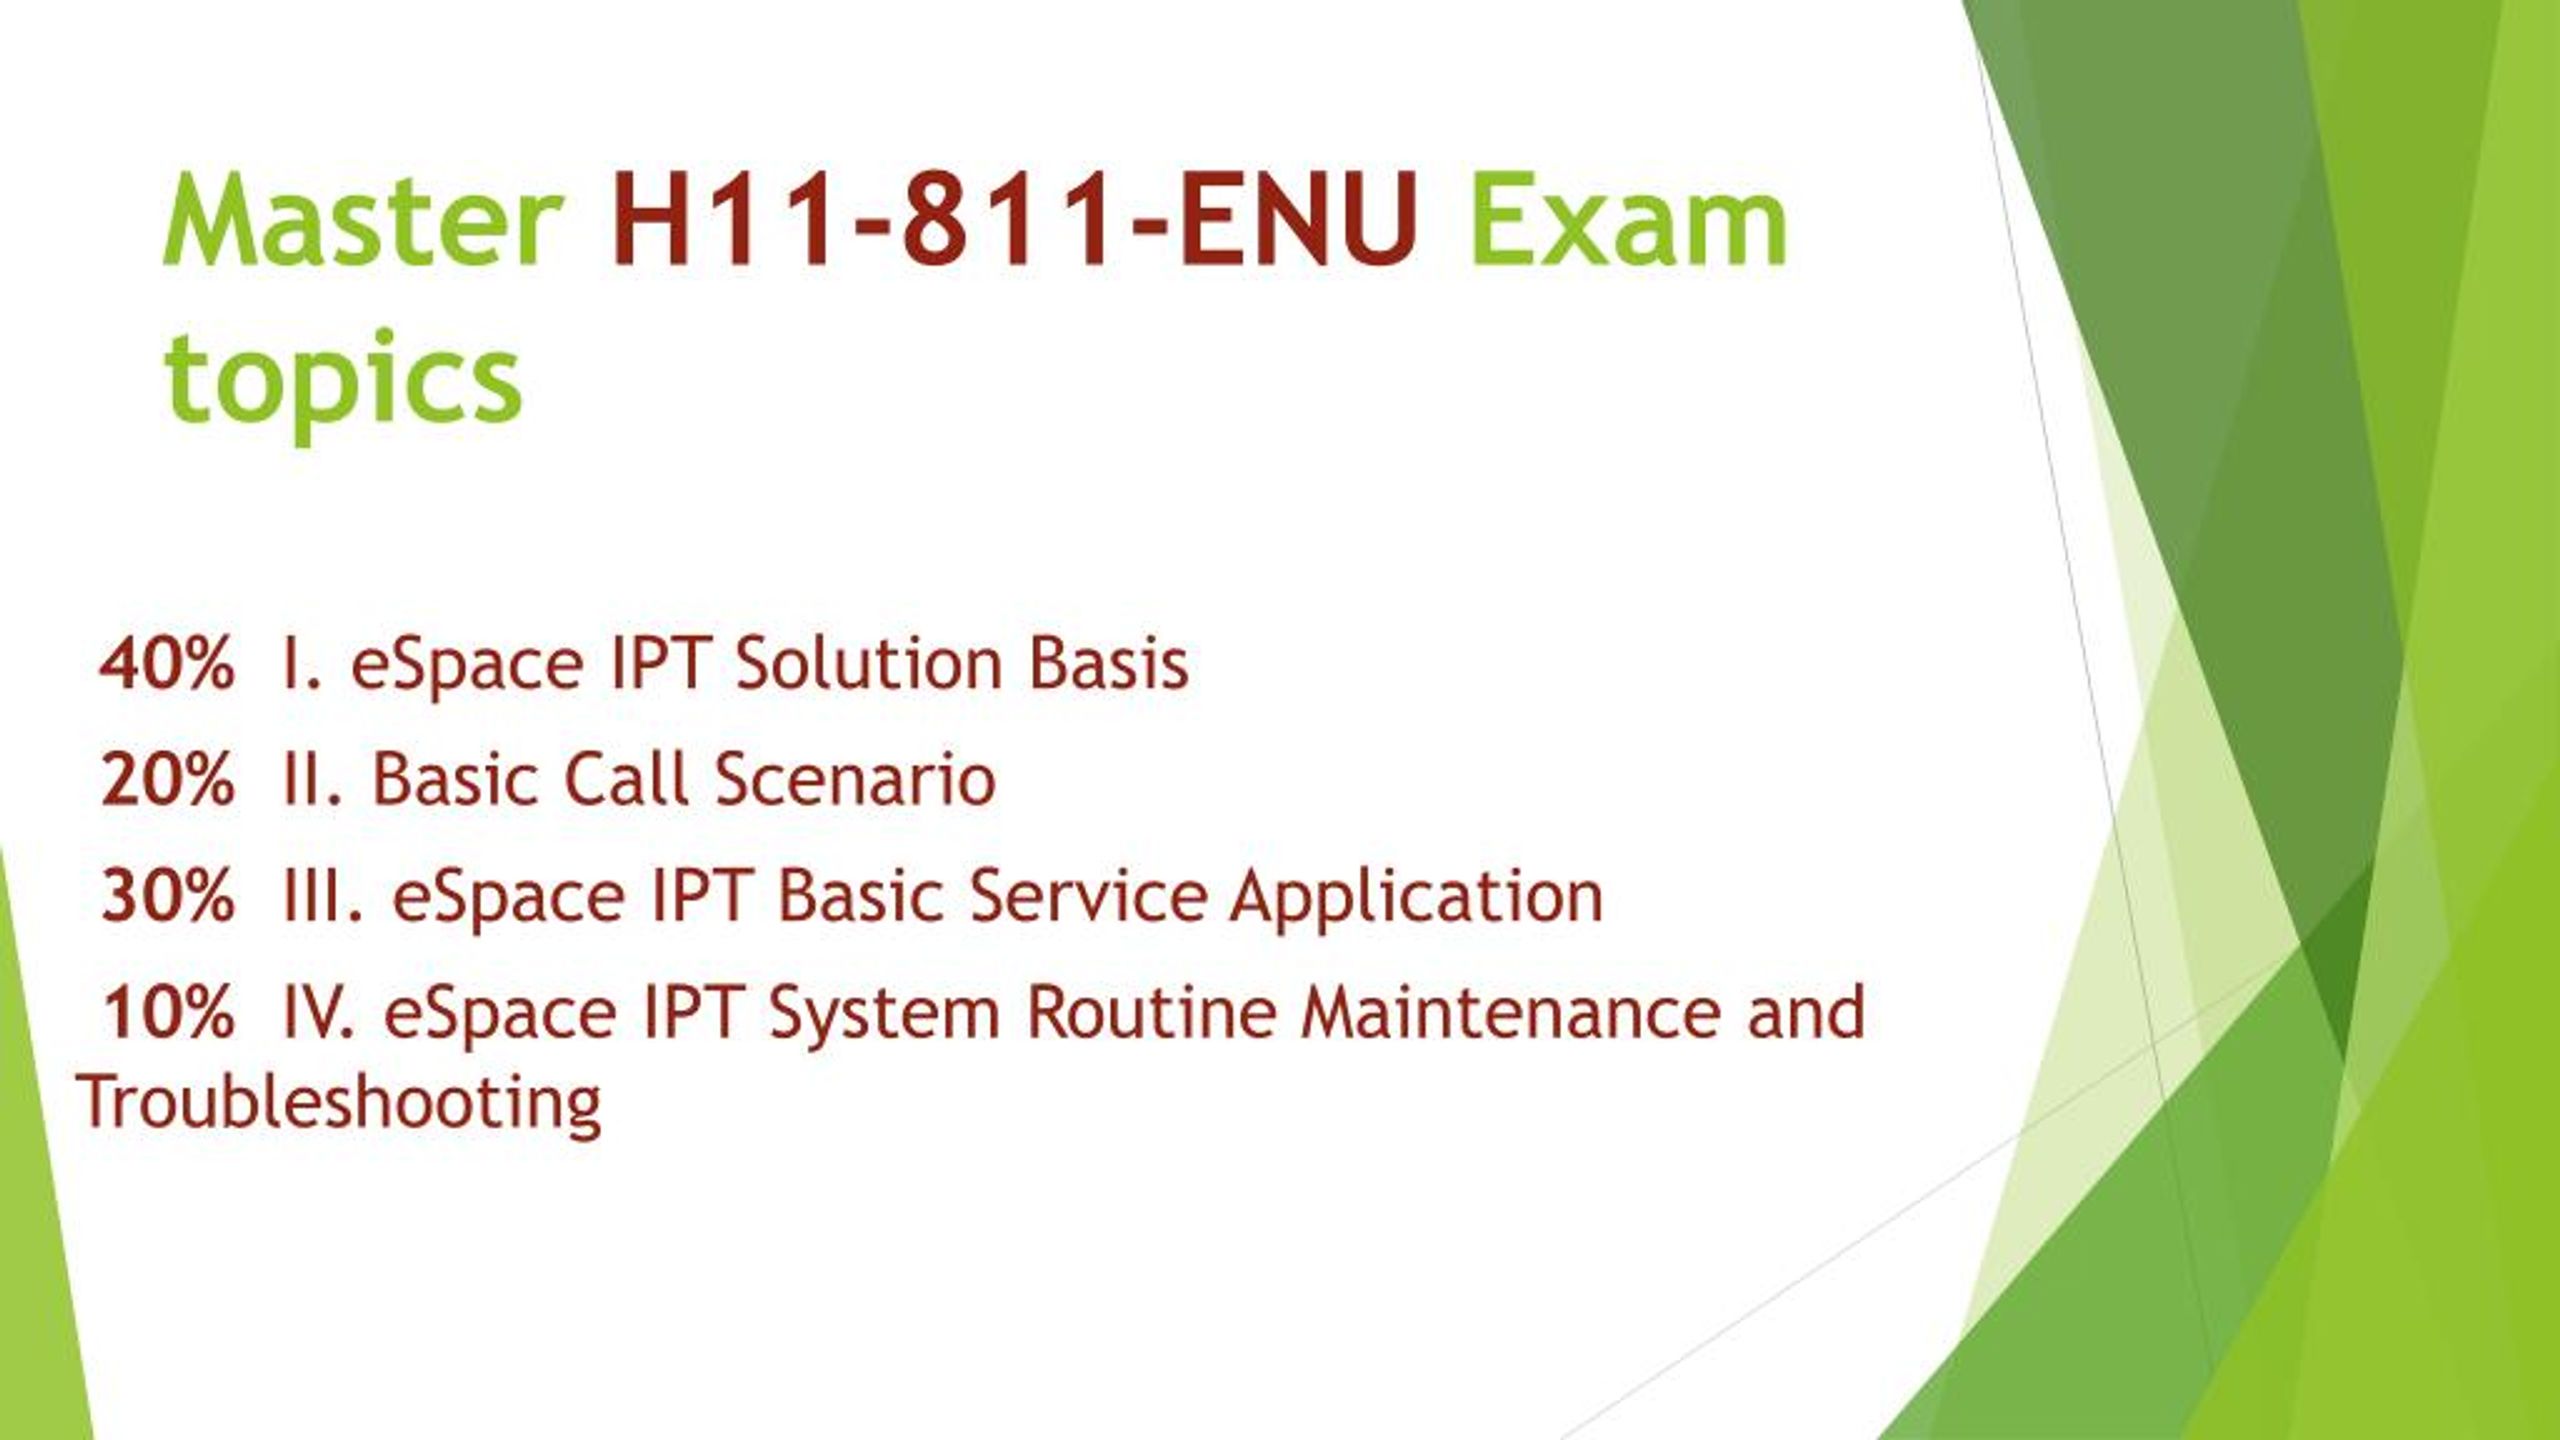 Testing H12-311-ENU Center